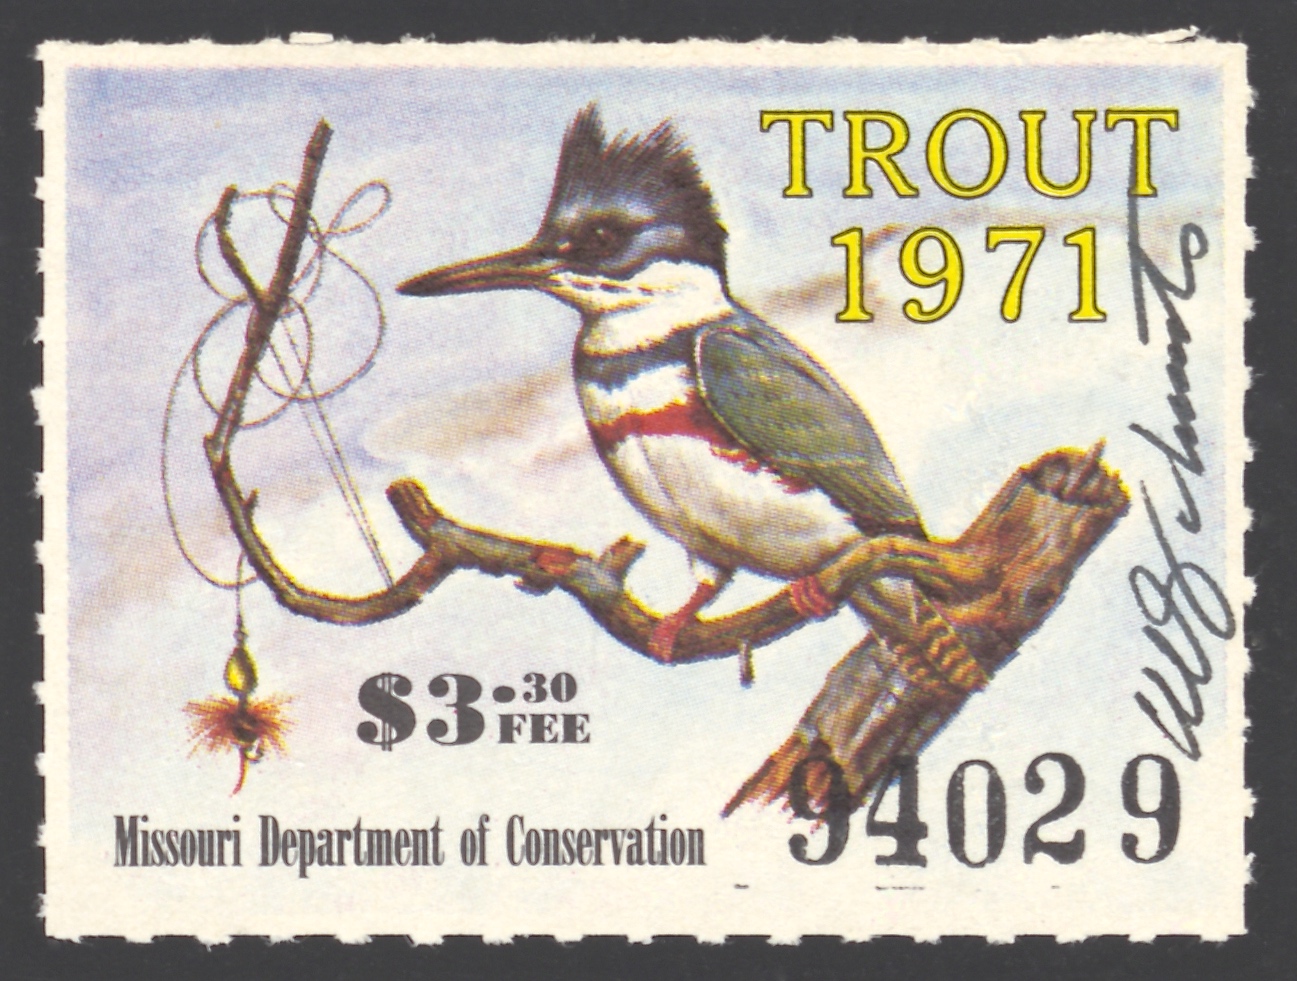 1971 Missouri Missouri Trout Stamp signed by Charles Schwartz